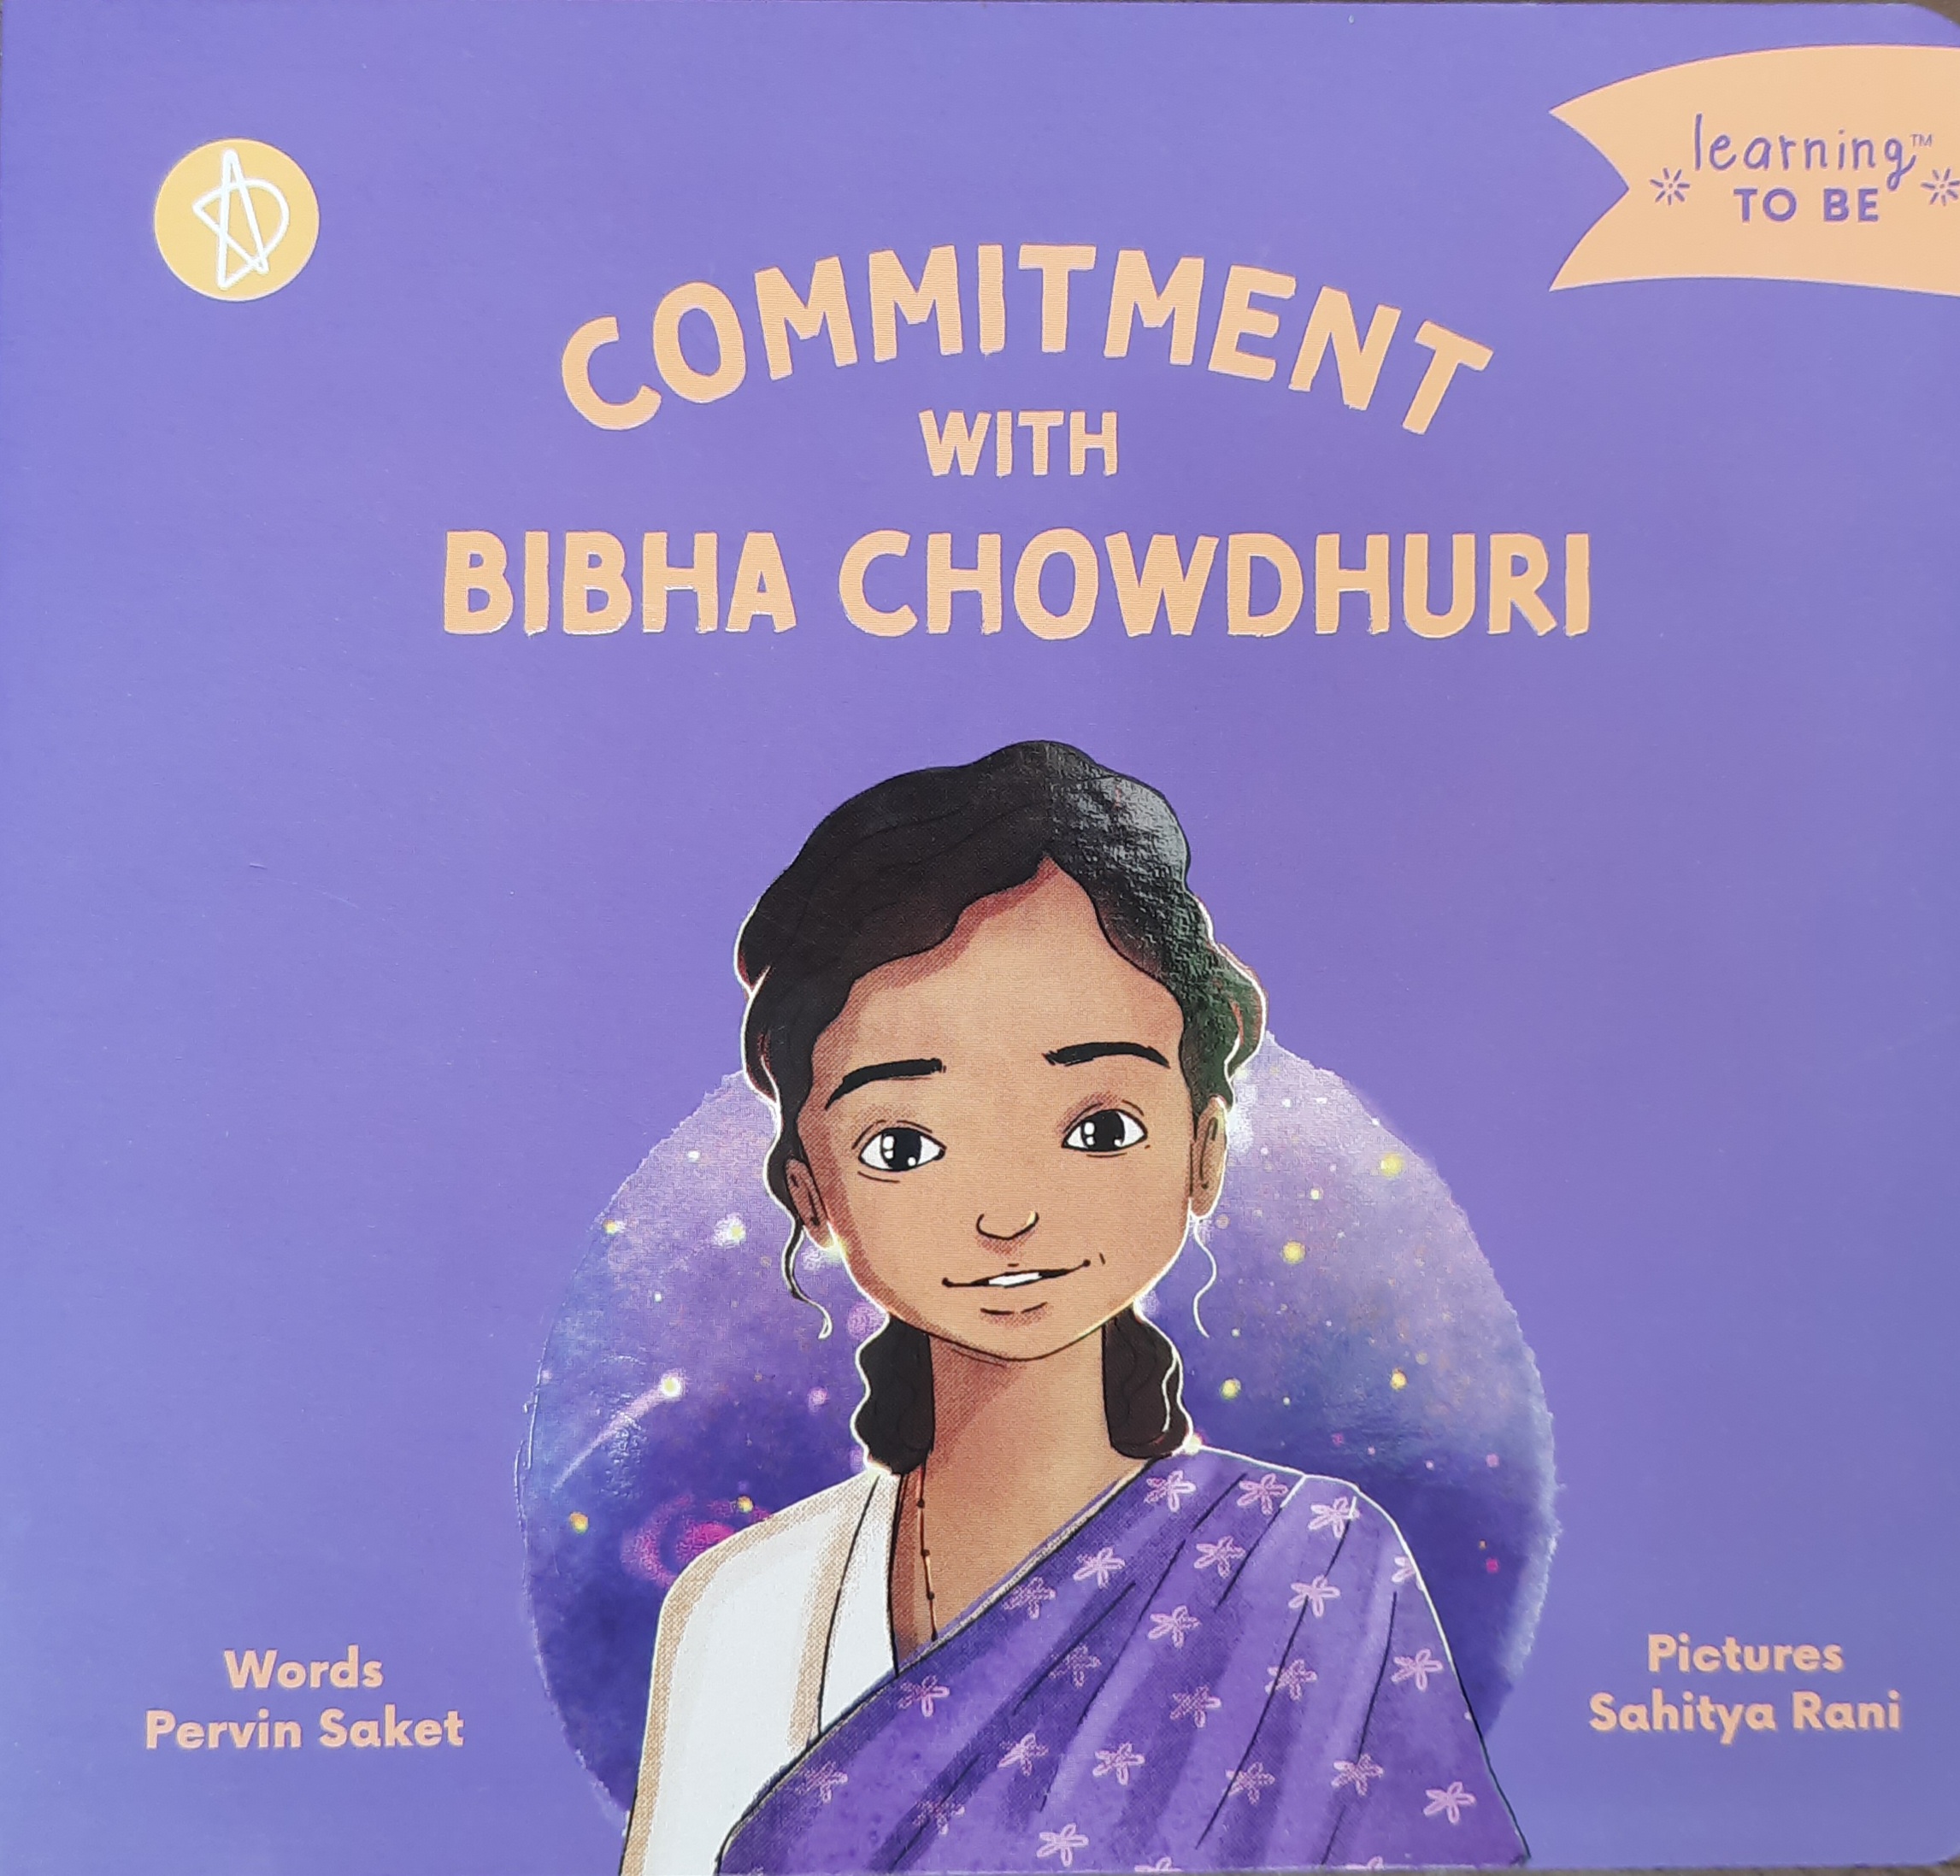 Bibha Chowdhuri